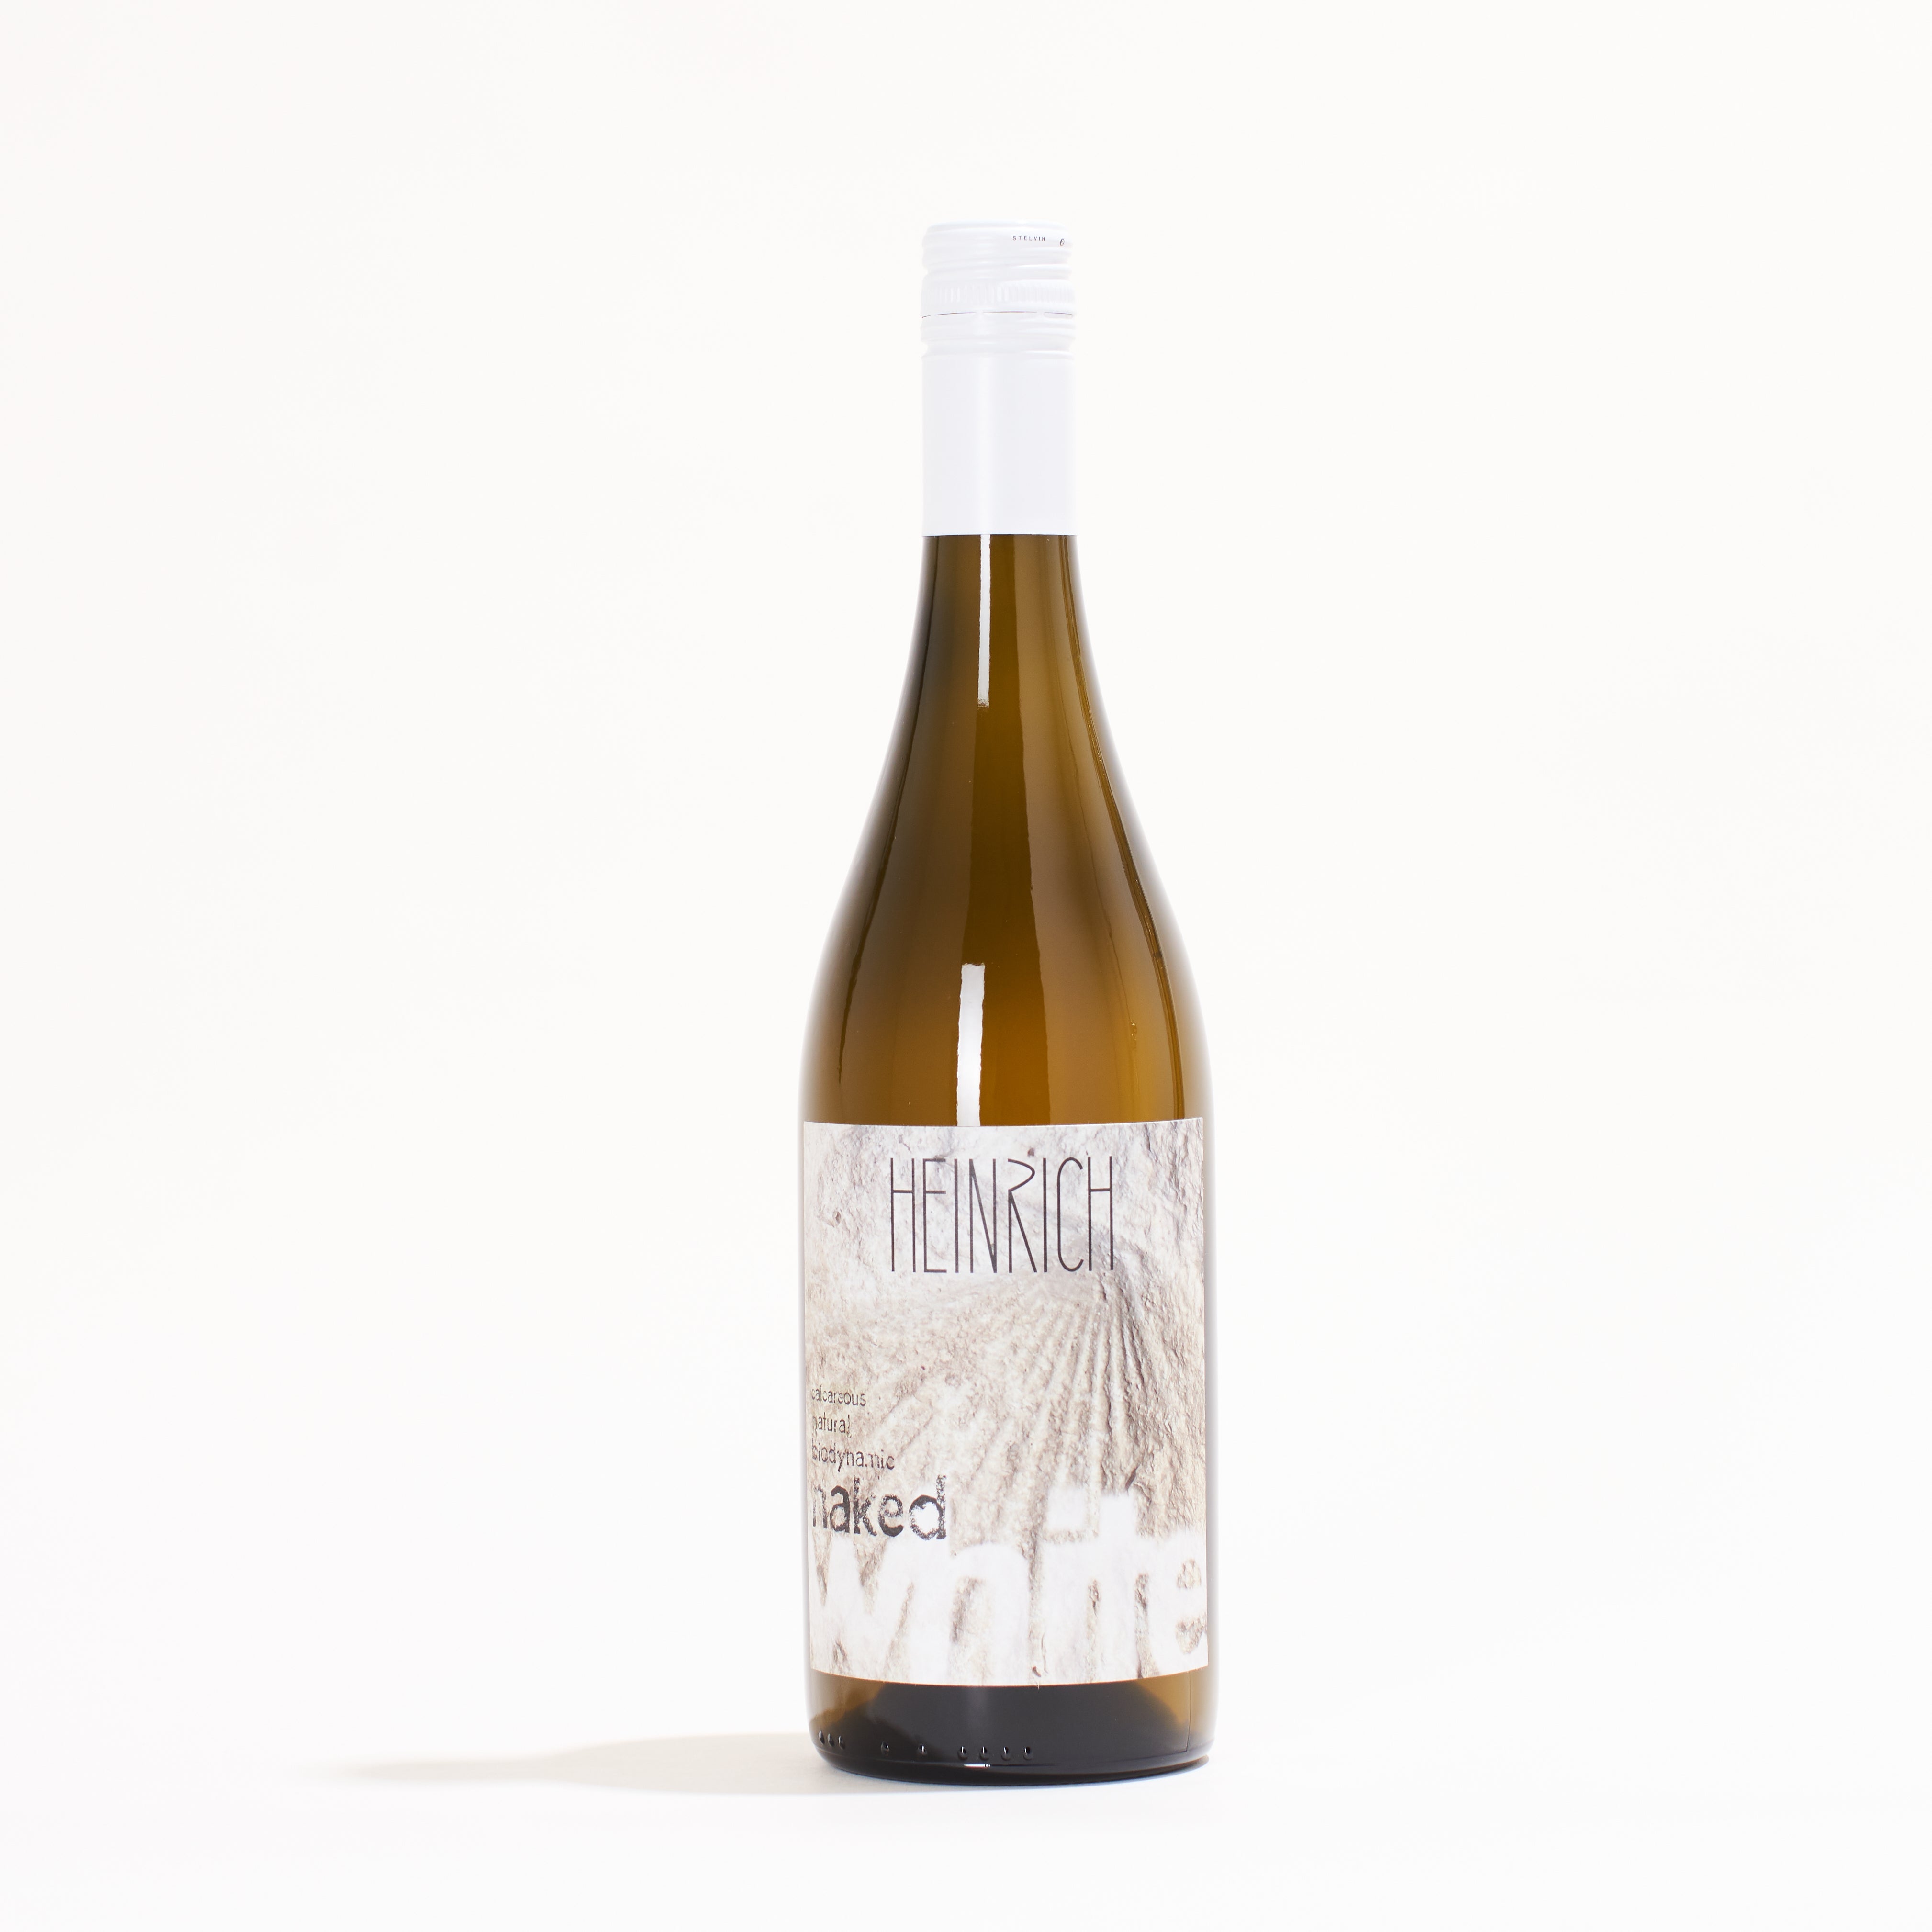 Heinrich Naked White Chardonnay, Pinot Blanc, Pinot Gris, Grüner Veltliner, Welschriesling natural white wine Burgenland Austria